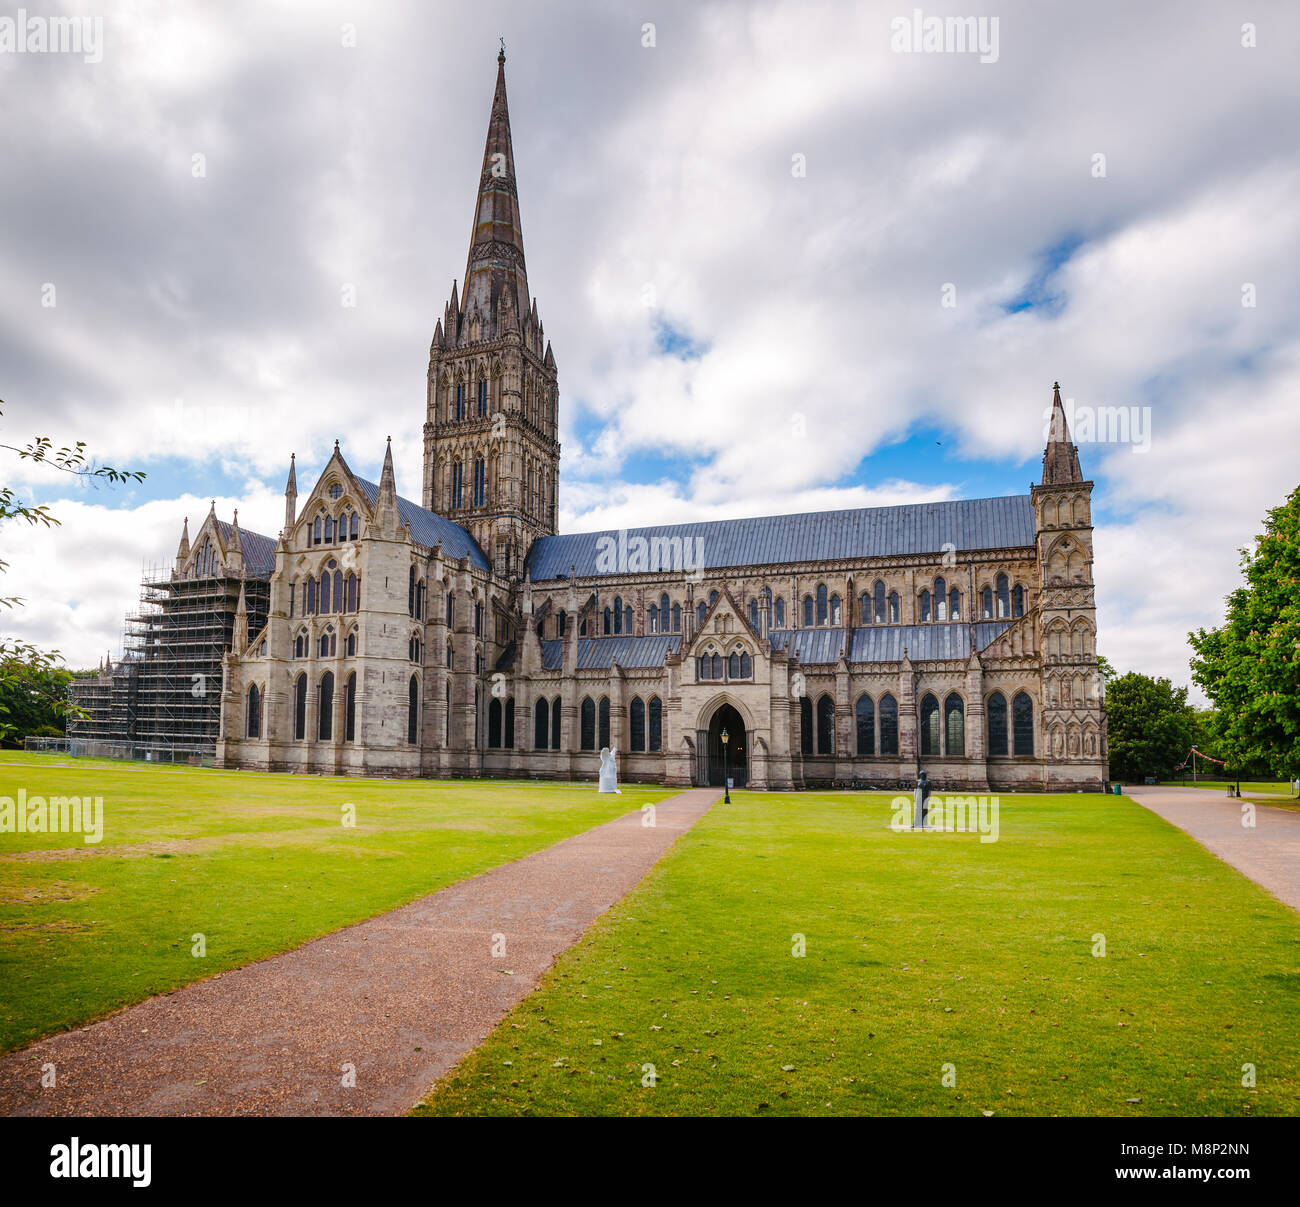 A nord la parte anteriore della chiesa anglicana della Cattedrale di Salisbury (Chiesa cattedrale della Beata Vergine Maria), uno dei più importanti esempi di inizio di architettura Inglese mi Foto Stock